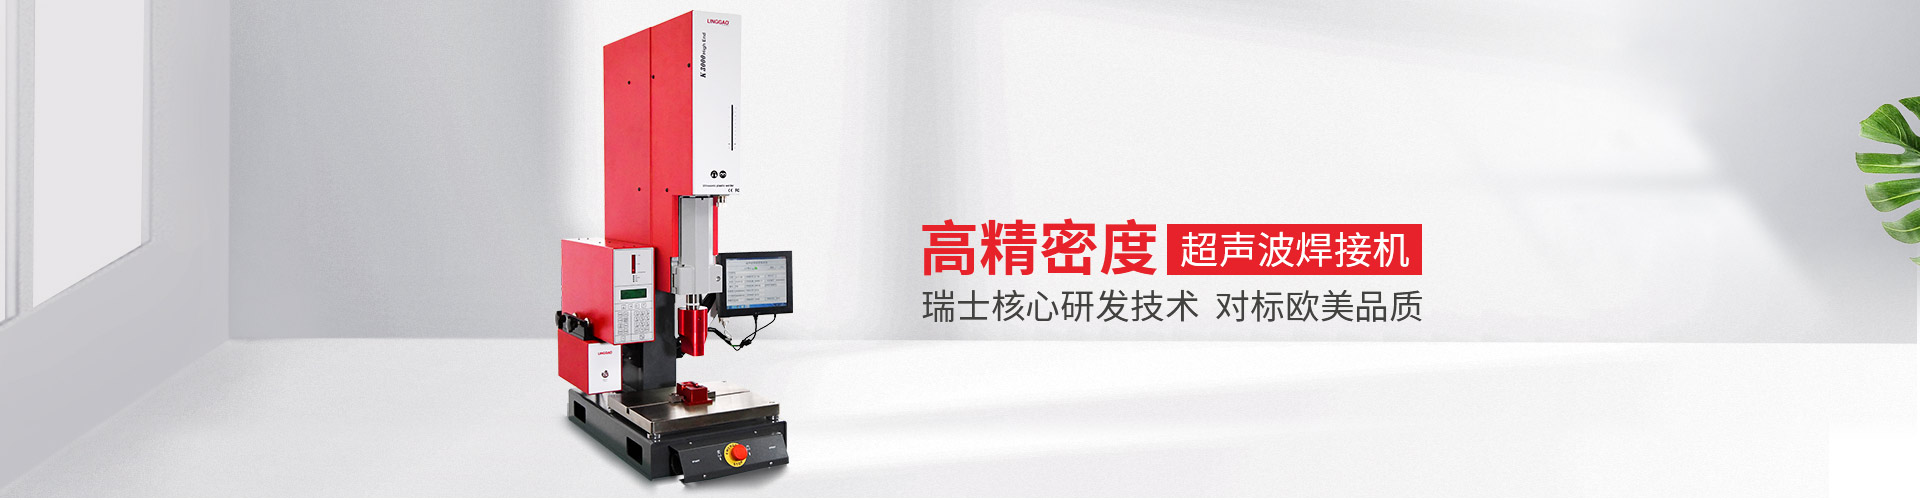 灵高-高精度超声波焊接机